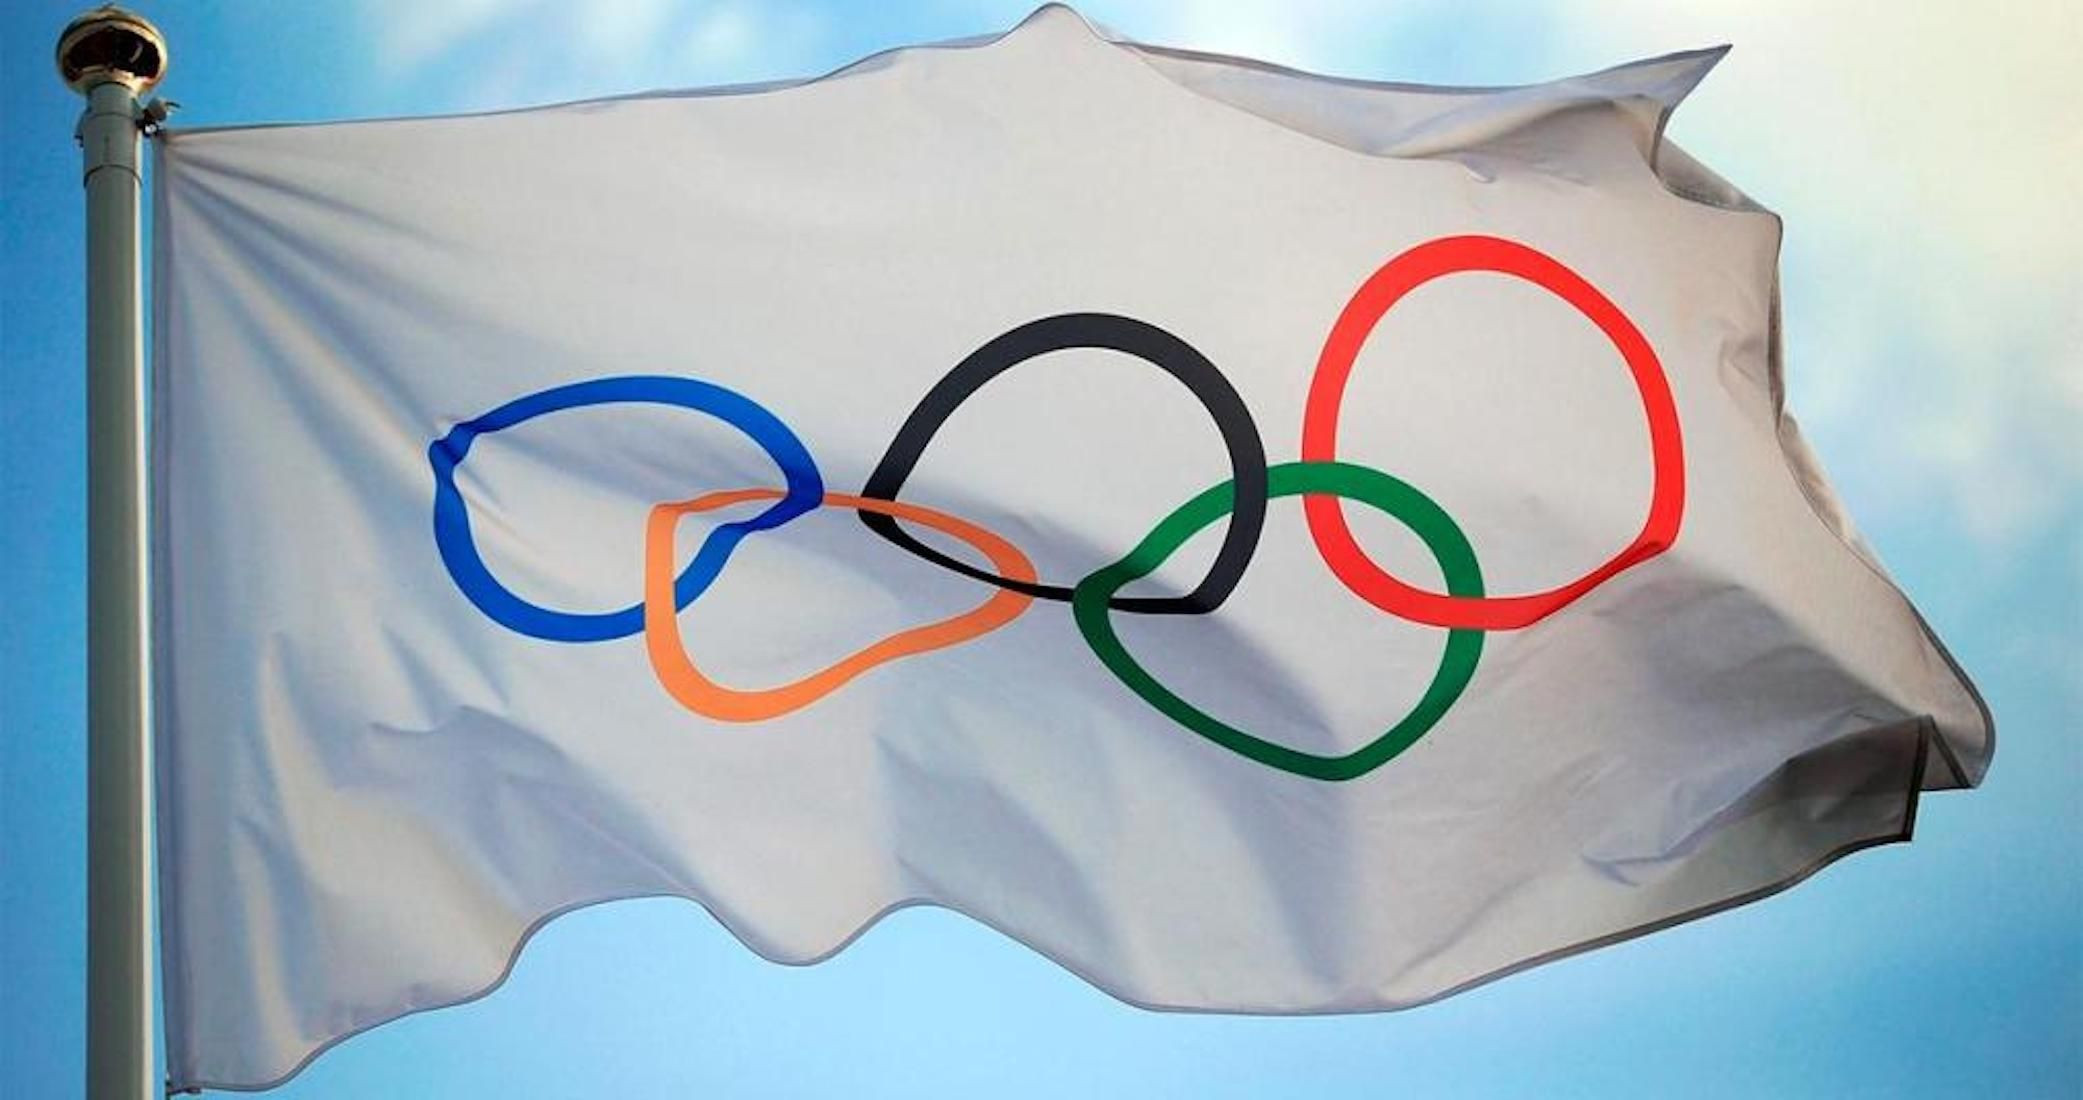 La bandera de los Juegos Olímpicos en Lausanne (Suiza), sede del Comité Olímpico Internacional / COI